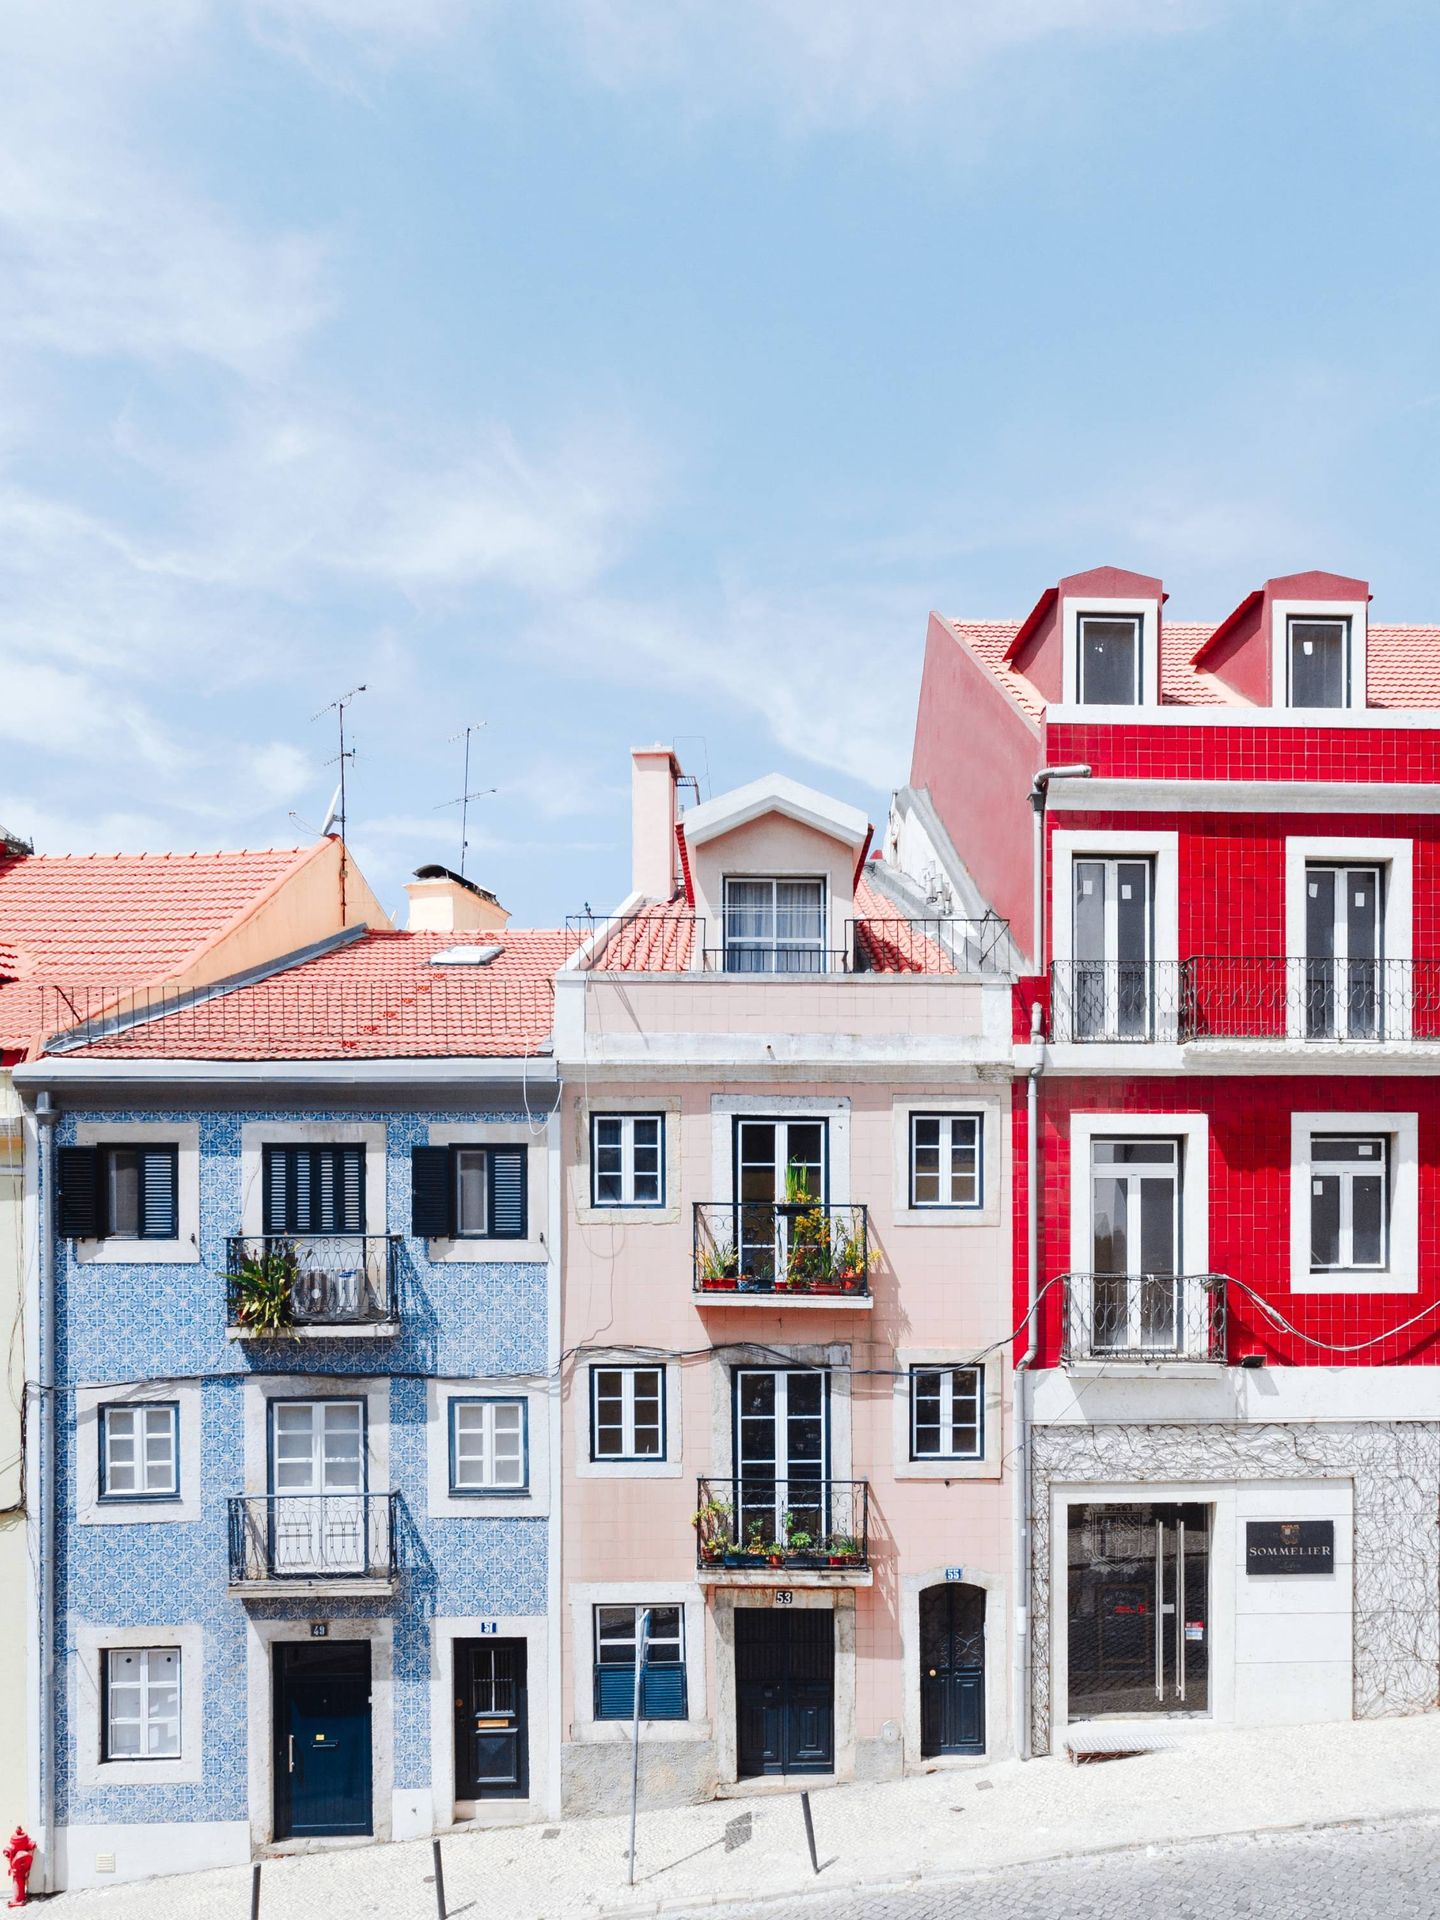 Casas de colores y fachadas con azulejos, así son los edificios de la capital portuguesa. (Unsplash)